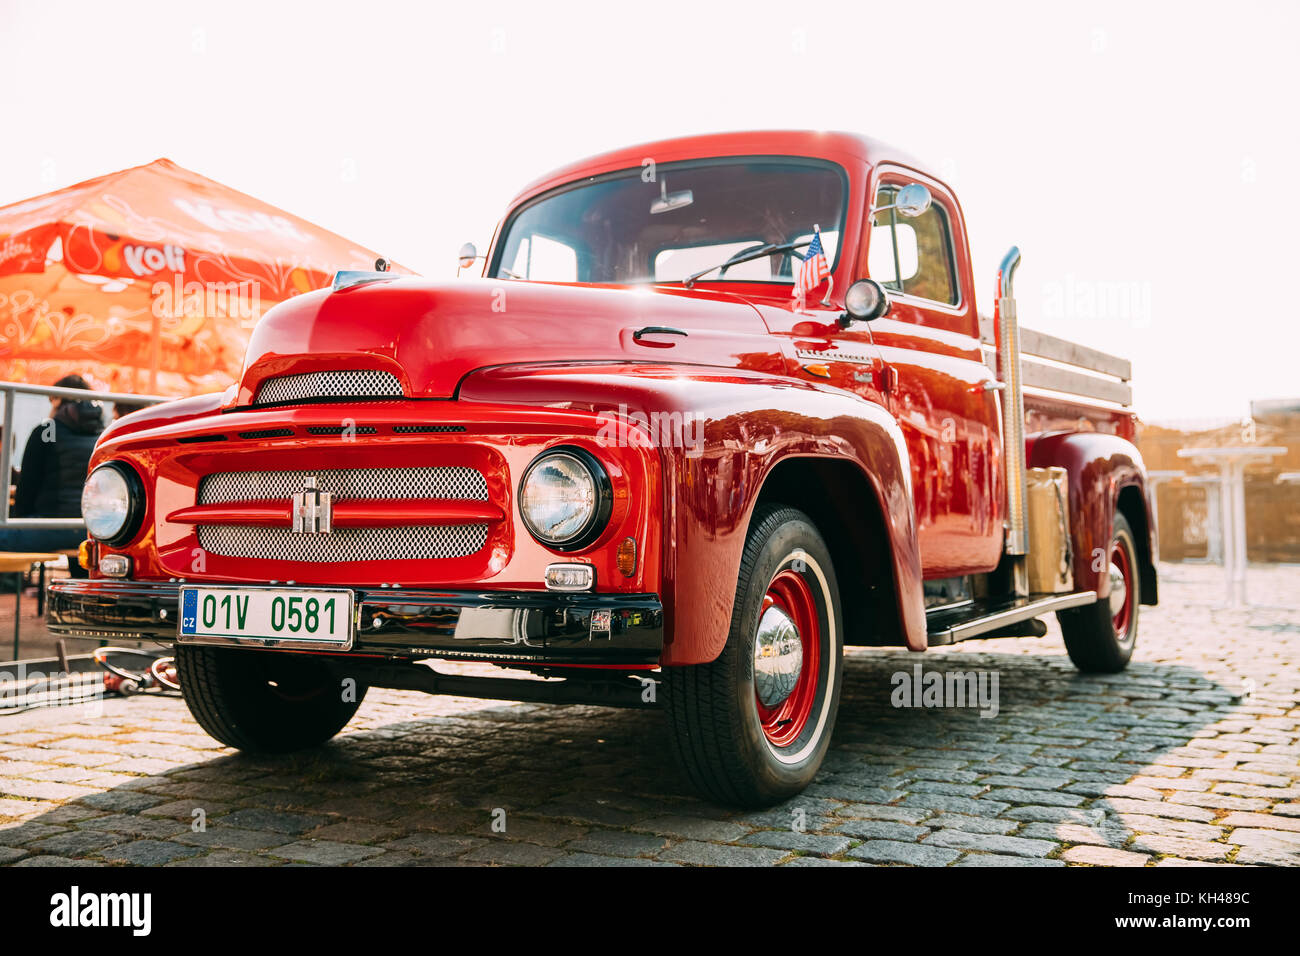 Prag, Tschechische Republik - 23. September 2017: Vorderansicht des roten International Harvester r-Serie Fahrzeug in der Straße geparkt. Stockfoto